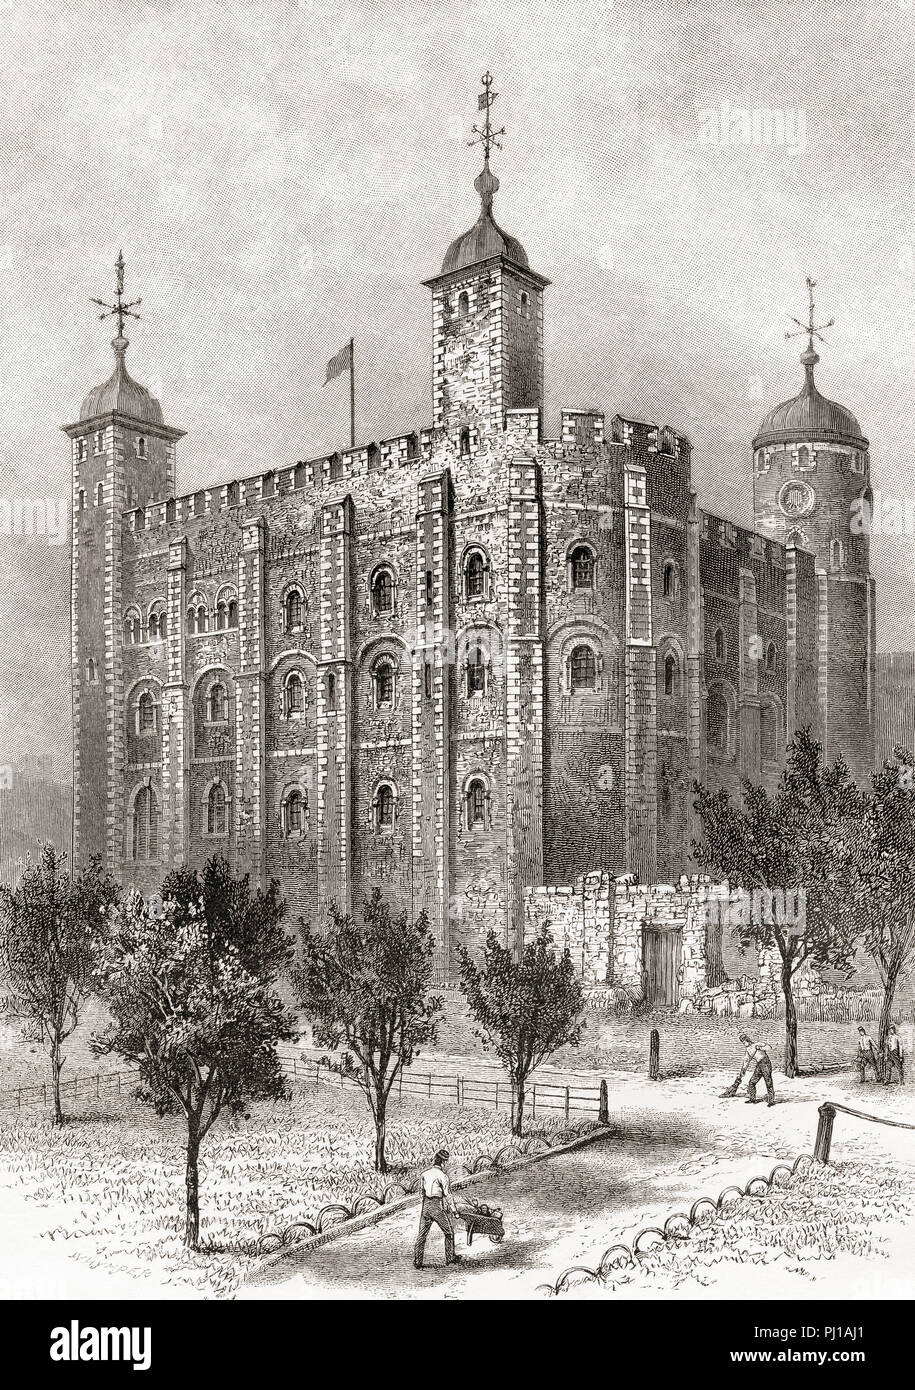 Der weiße Turm von Südosten aus gesehen. Der weiße Turm, einem zentralen Turm, der Alte, der Tower von London, England. Von London Bilder, veröffentlicht 1890. Stockfoto